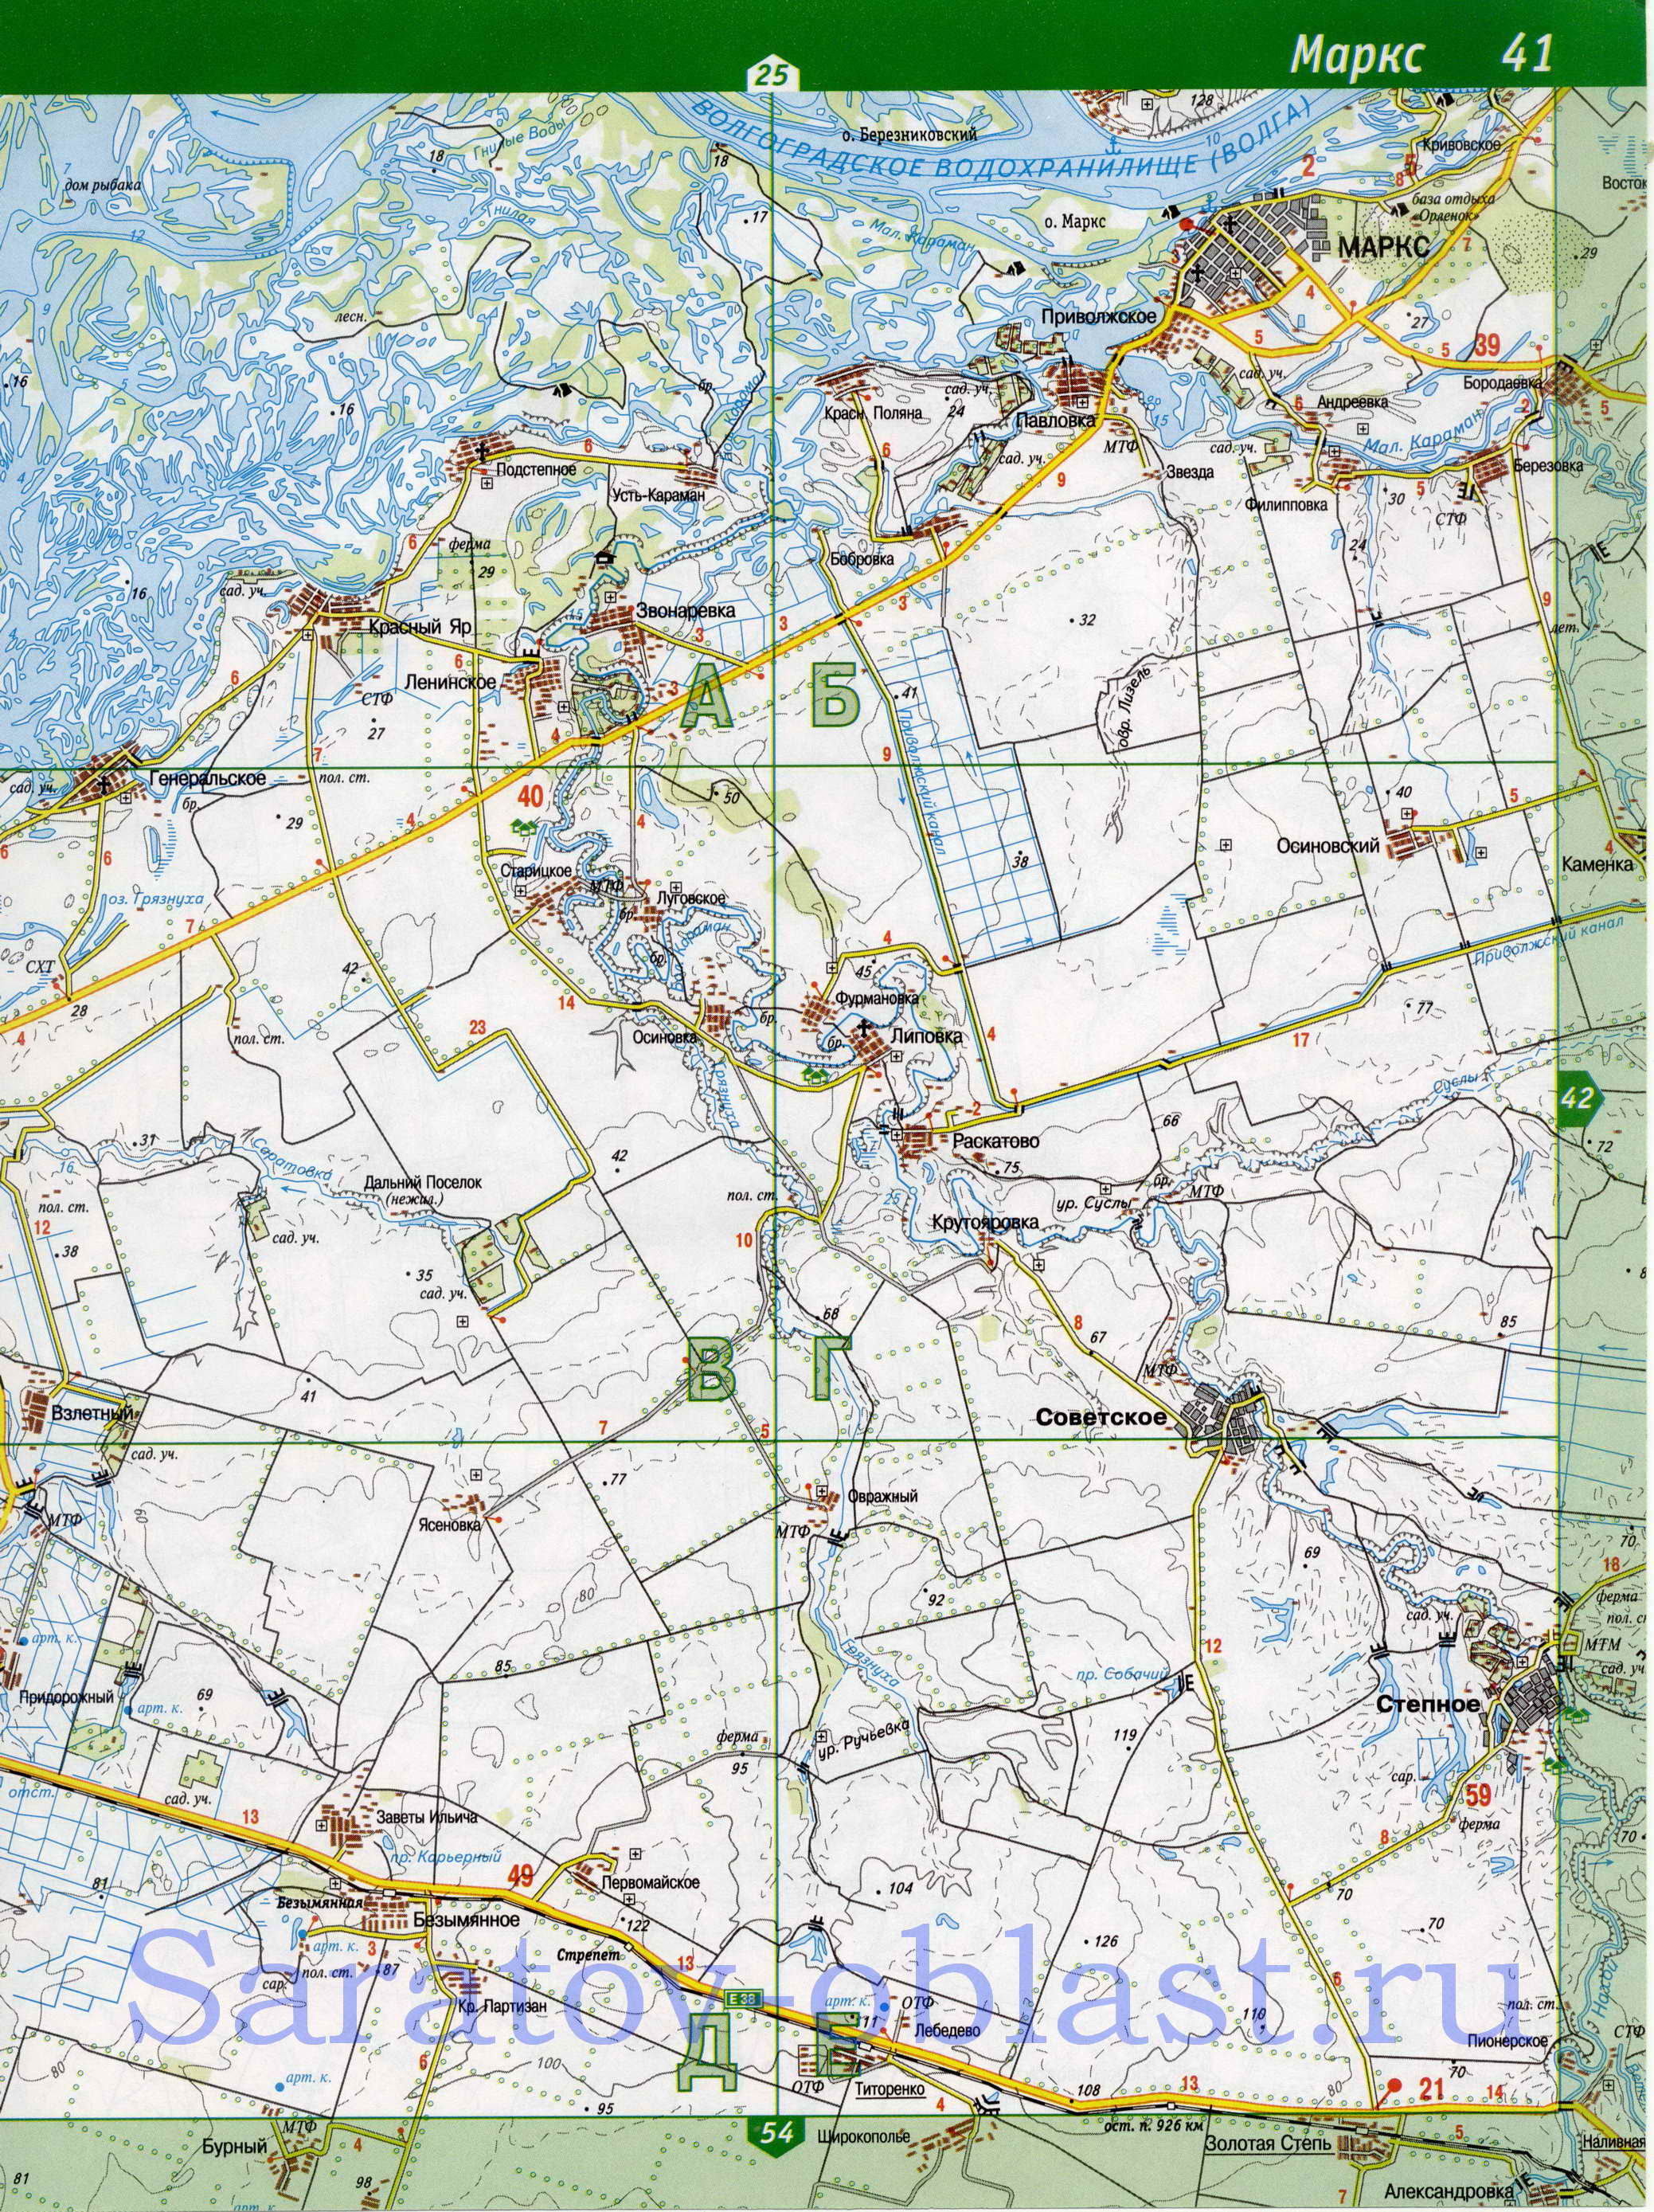 Карта Энгельского района. Подробная карта - Энгельский район Саратовской области, B0 - 